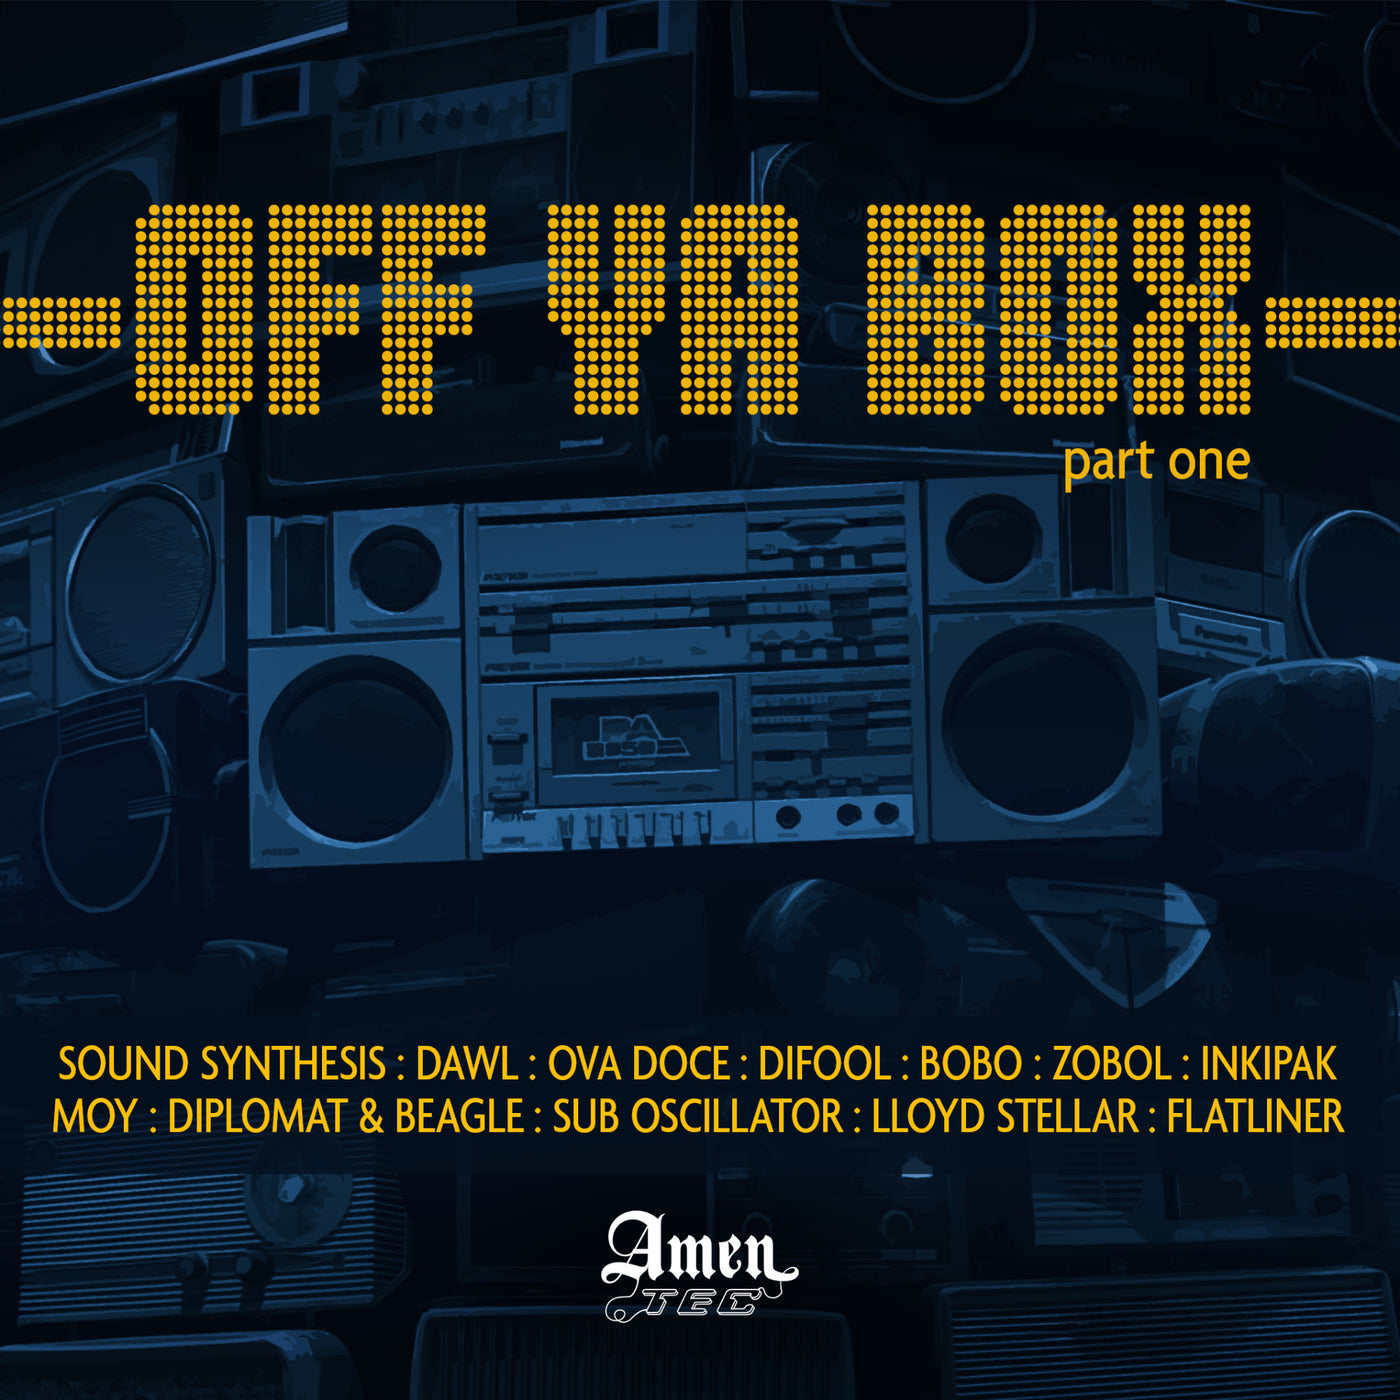 AmenTec Presents - Off Ya Box (Part One)